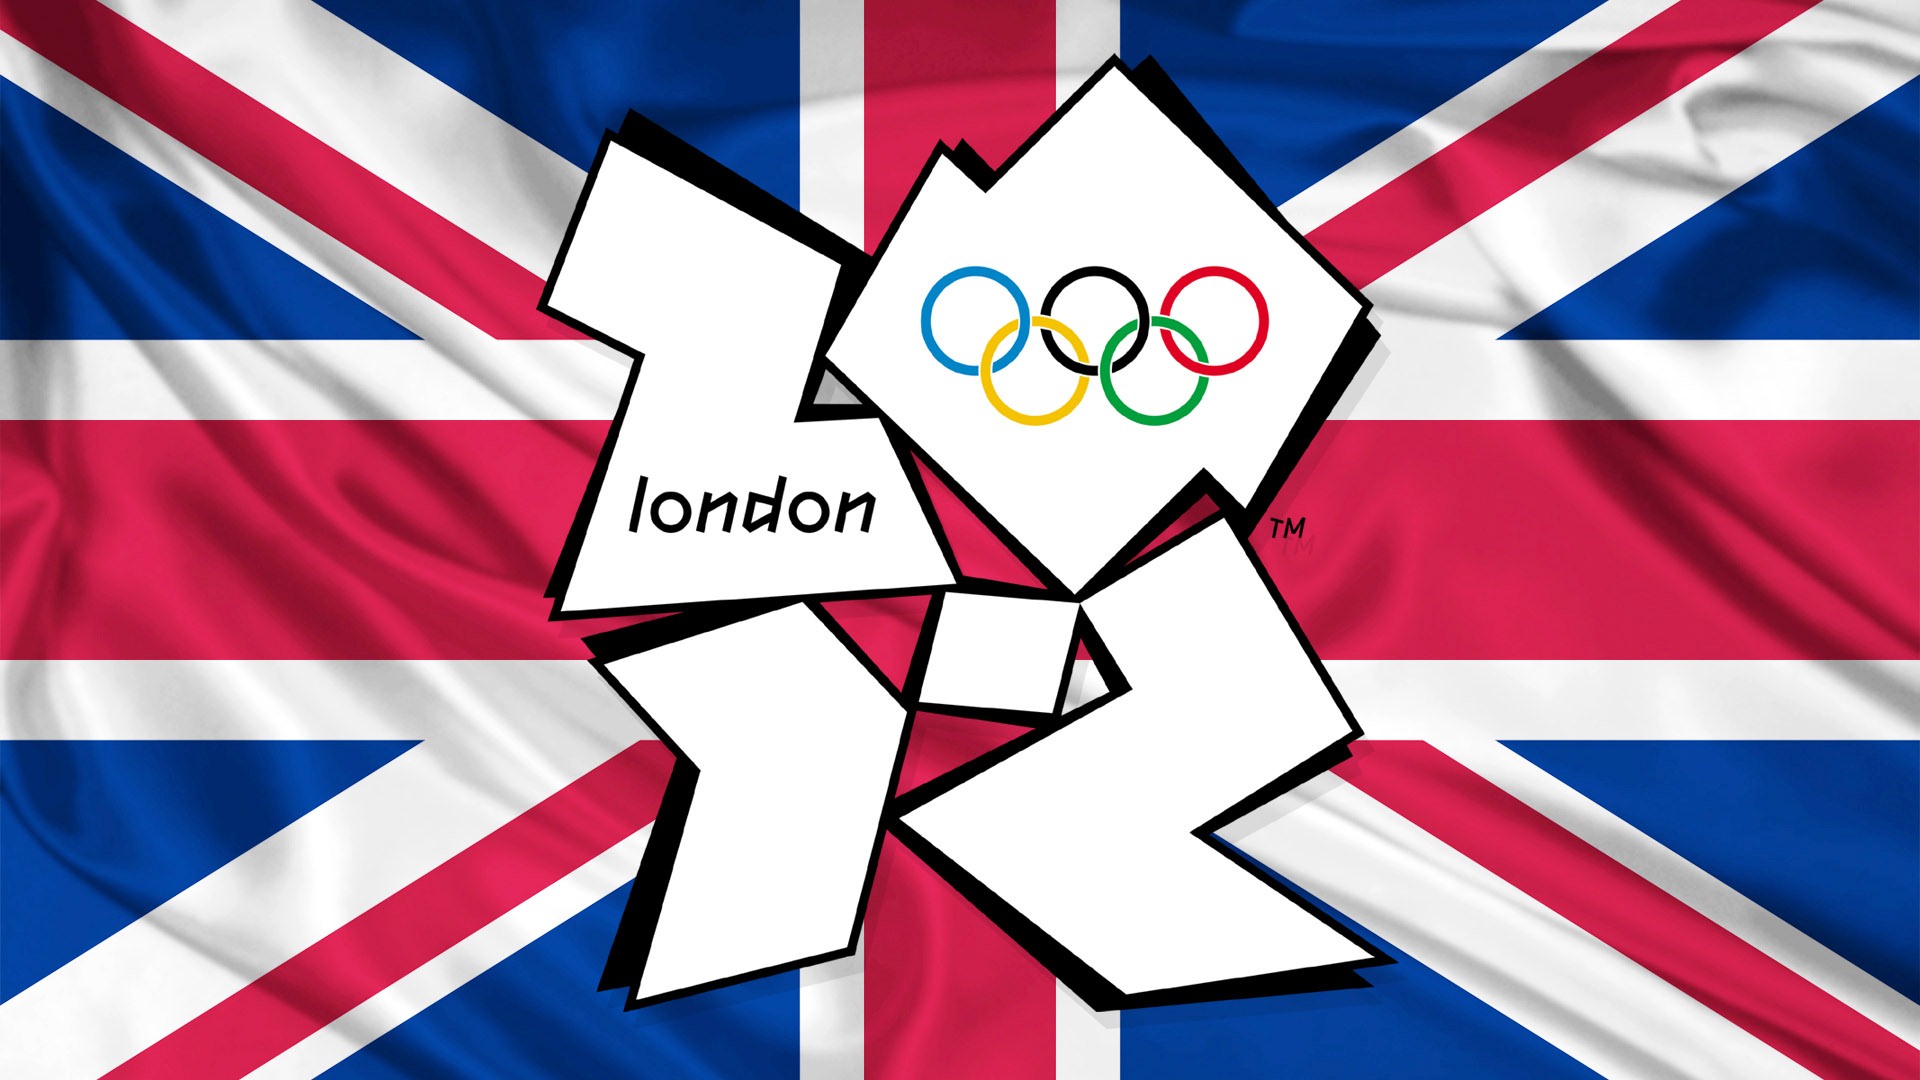 2012伦敦奥运会 主题壁纸(二)19 - 1920x1080